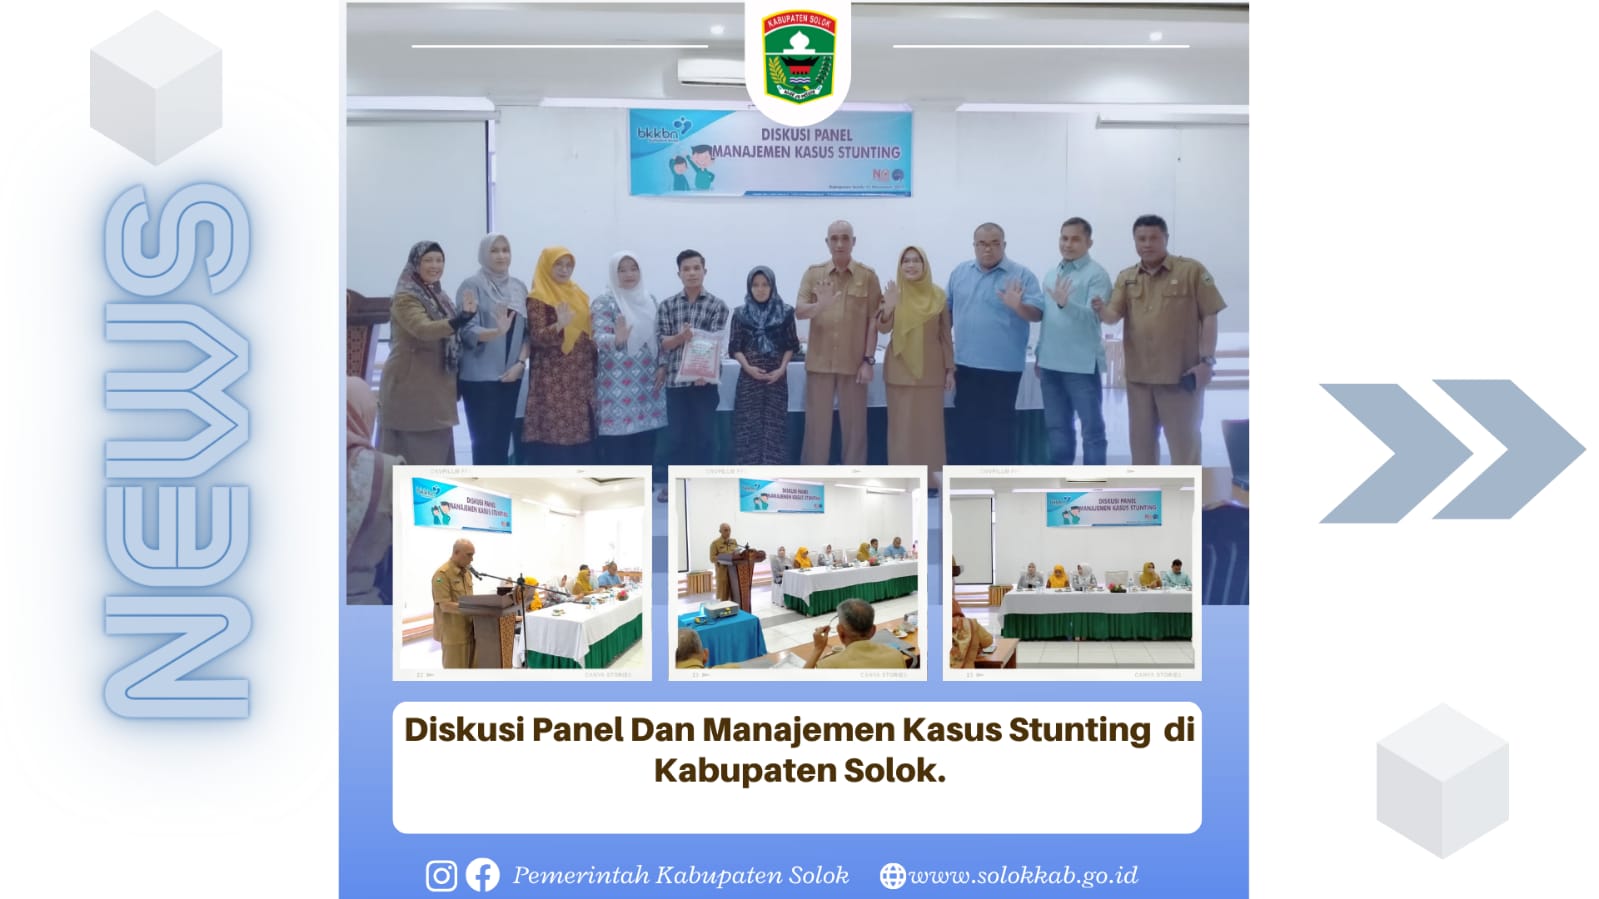 Diskusi Panel dan Manajemen Kasus Stunting di Kabupaten Solok